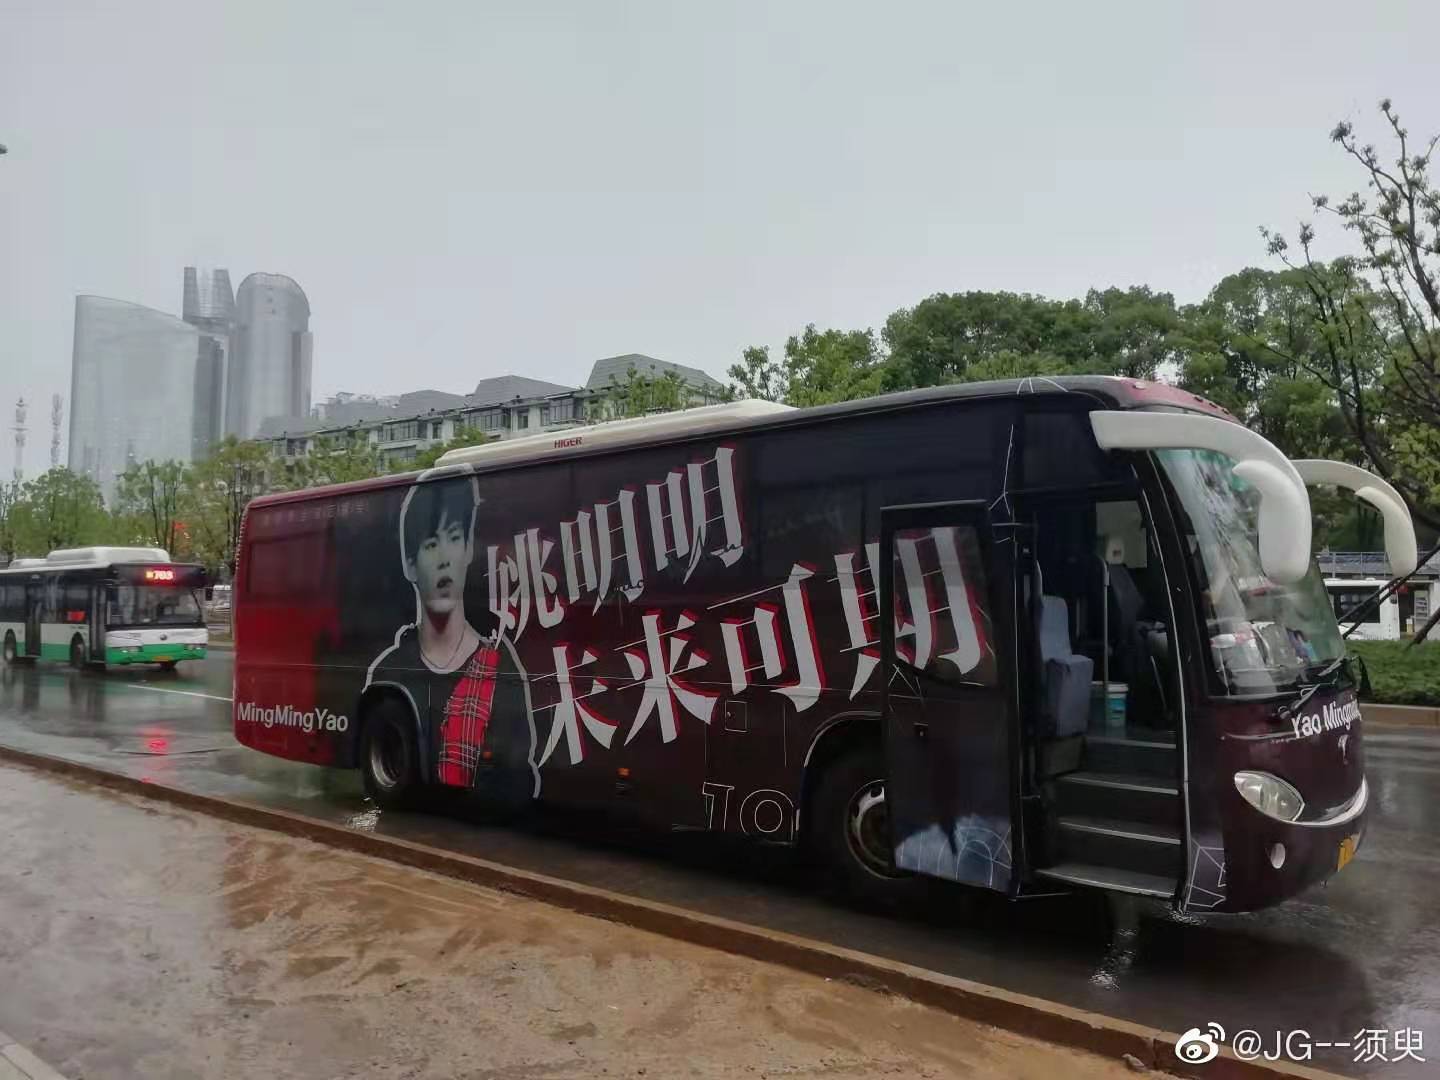 广州大巴车体广告 上海户外媒体广告 创意巴士广告